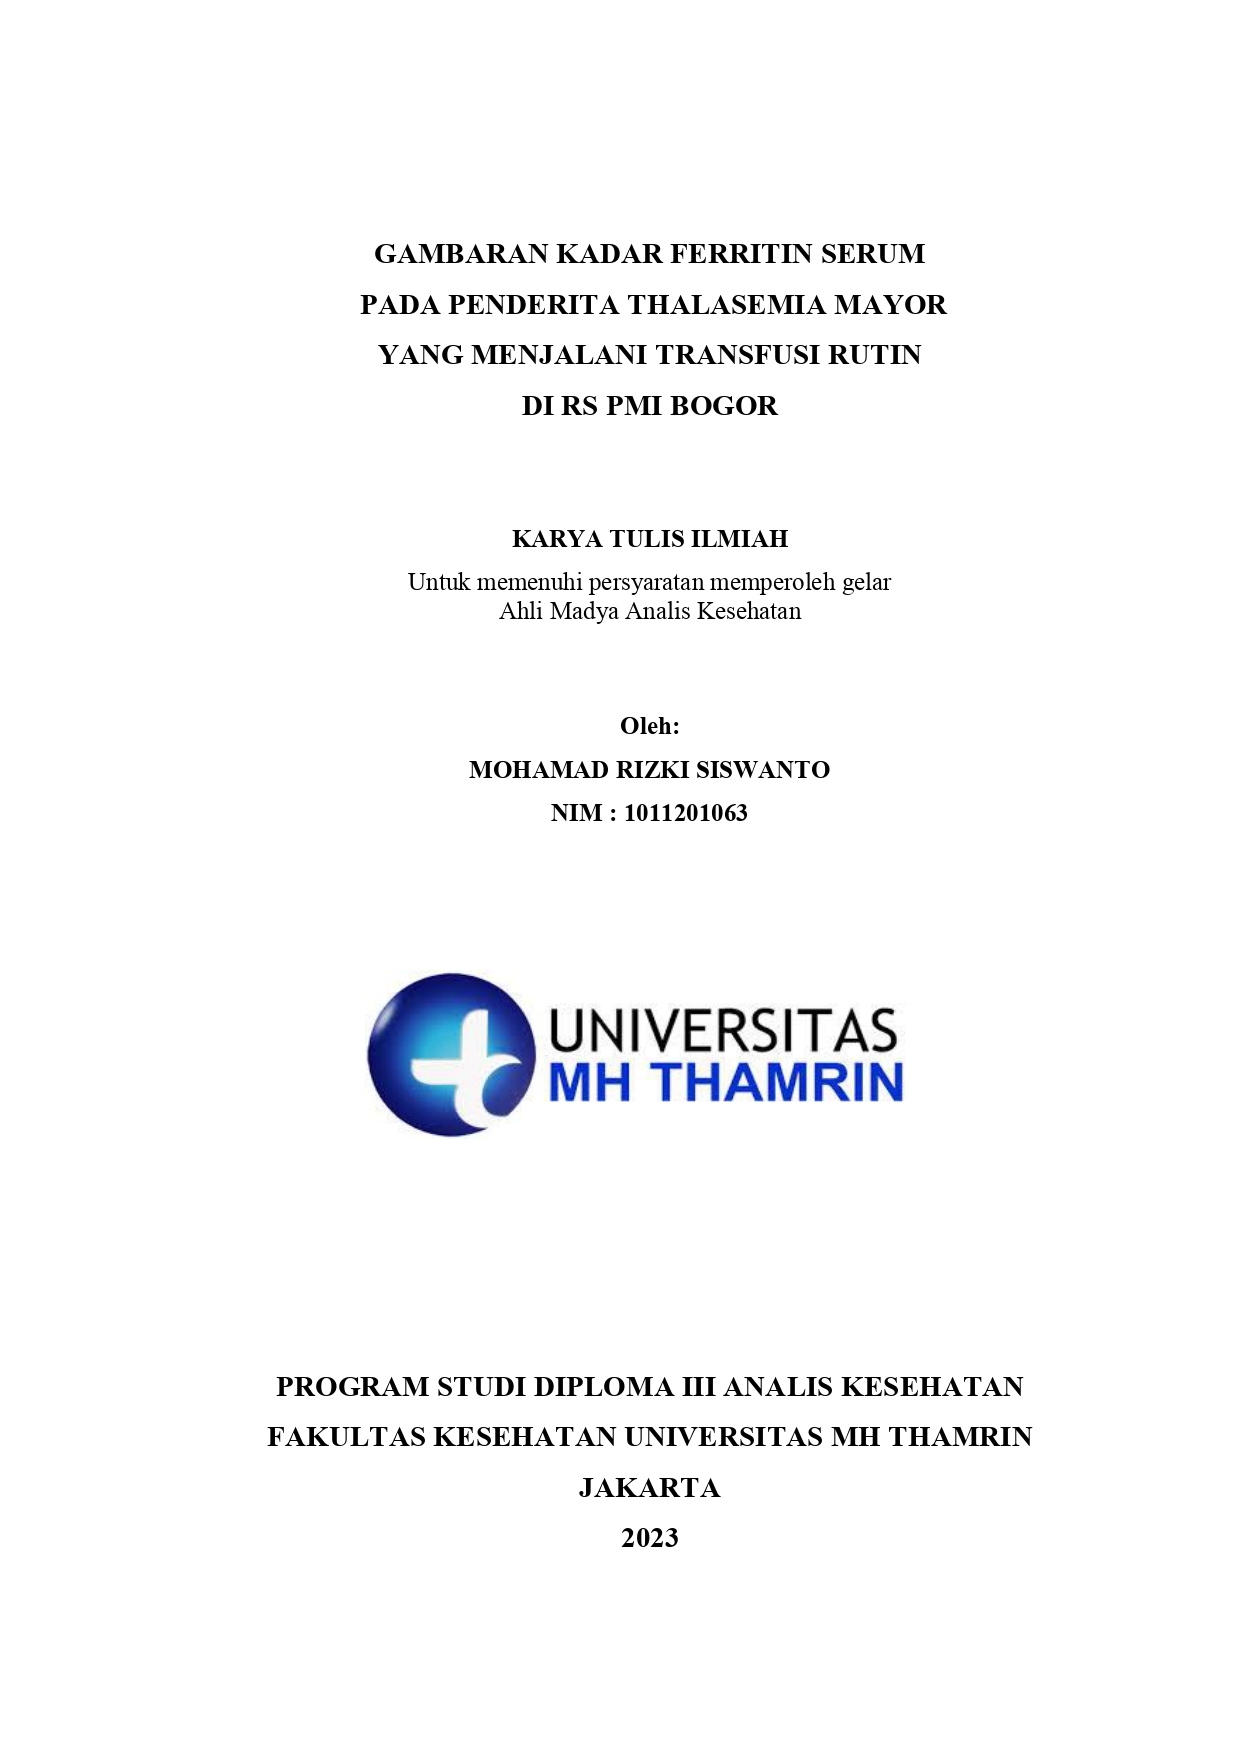 Gambaran Kadar Ferritin Serum pada Penderita Thalasemia Mayor yang Menjalani Transfusi Rutin di RS PMI Bogor